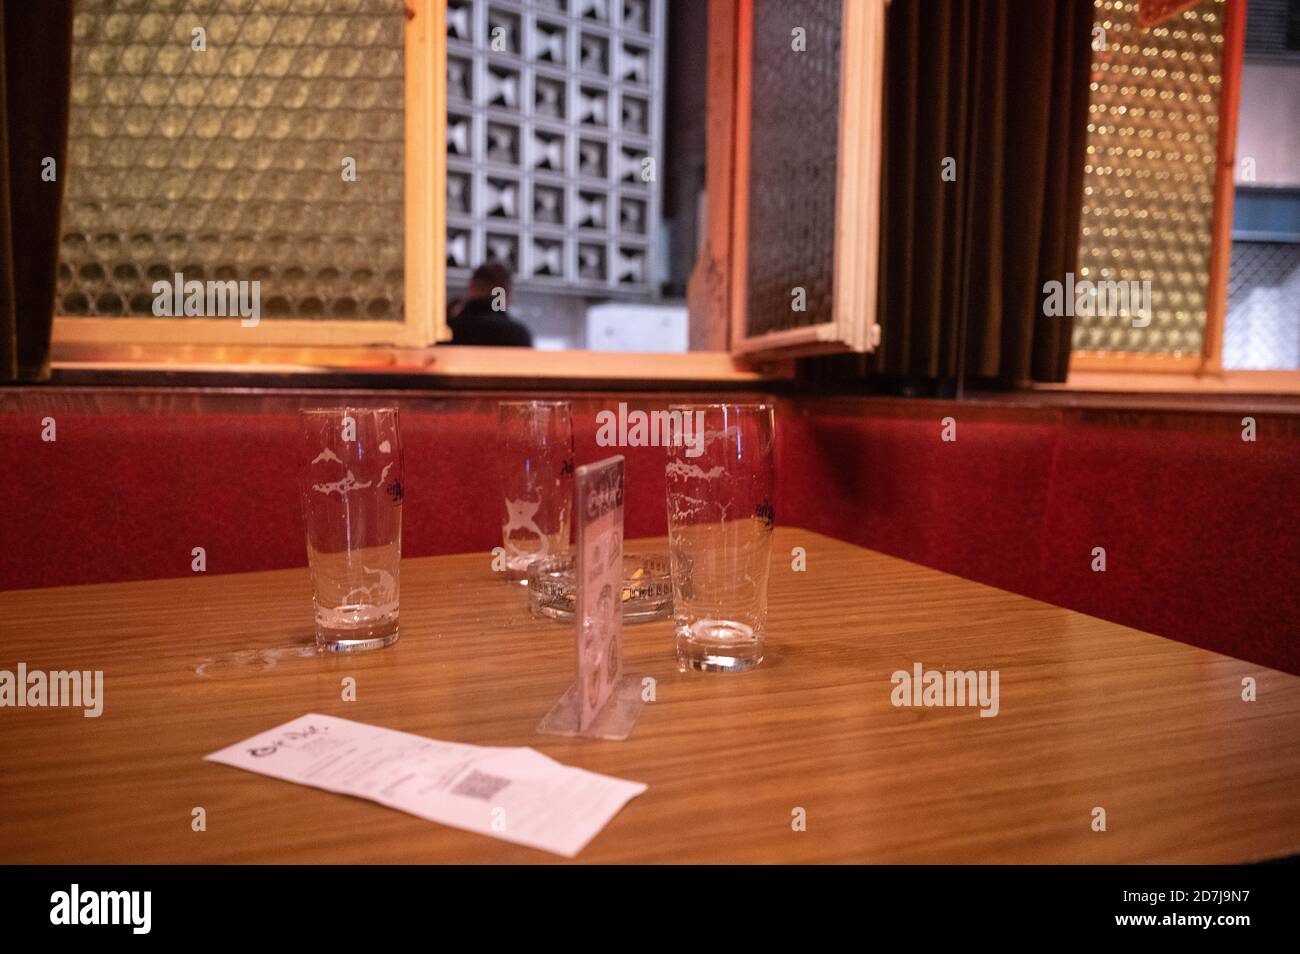 22 ottobre 2020, Baden-Wuerttemberg, Stoccarda: I bicchieri da birra vuoti si trovano su un tavolo all'orario di chiusura di Corona. A causa degli alti numeri di corona, la capitale dello stato di Baden-Wuerttemberg ha vietato la gestione di ristoranti tra le 23:00 e le 6:00 da giovedì. Foto: Sebastian Gollnow/dpa Foto Stock